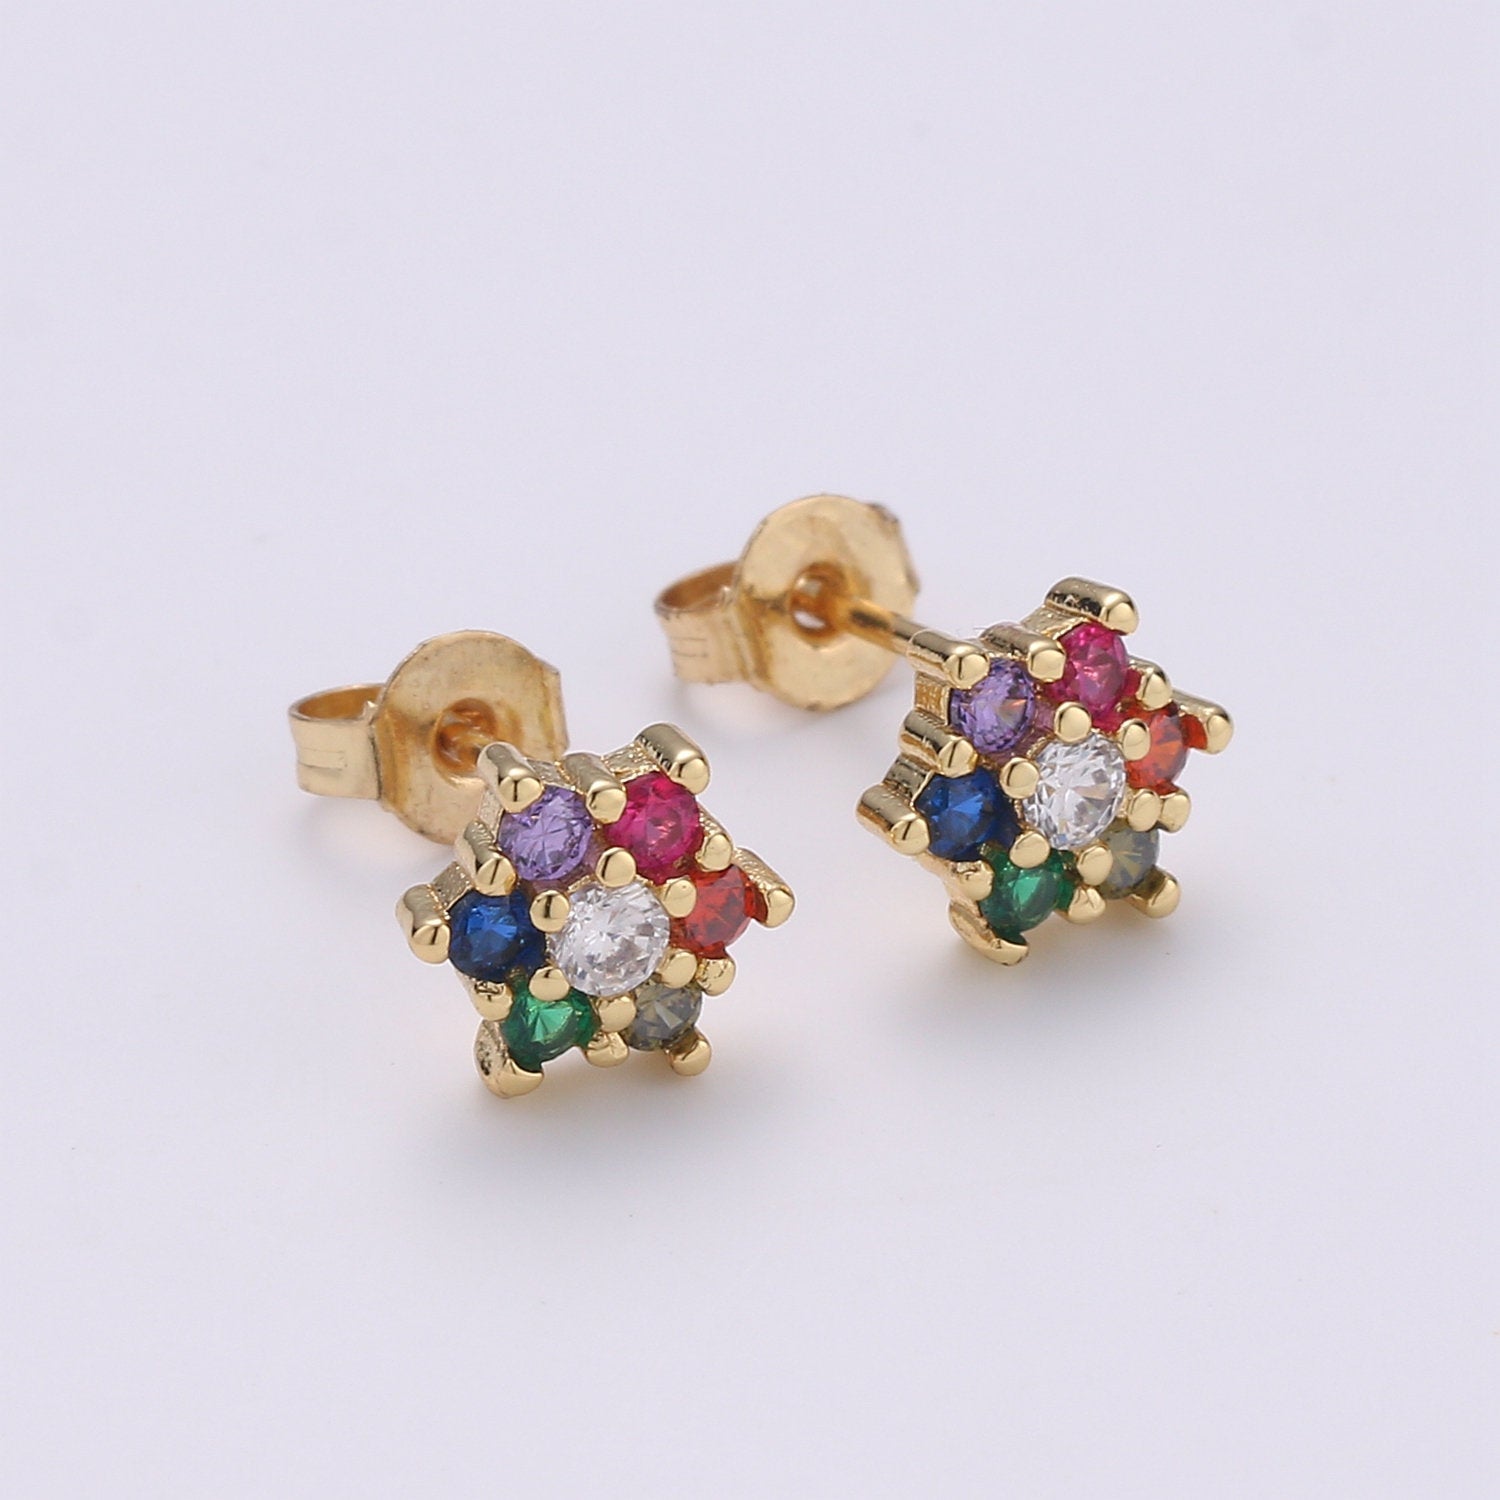 Tiny flower stud earrings, dainty stud earrings, flower stud earrings, star cz stud earrings, diamond cz studs, EARR-1236/Q-285 - DLUXCA